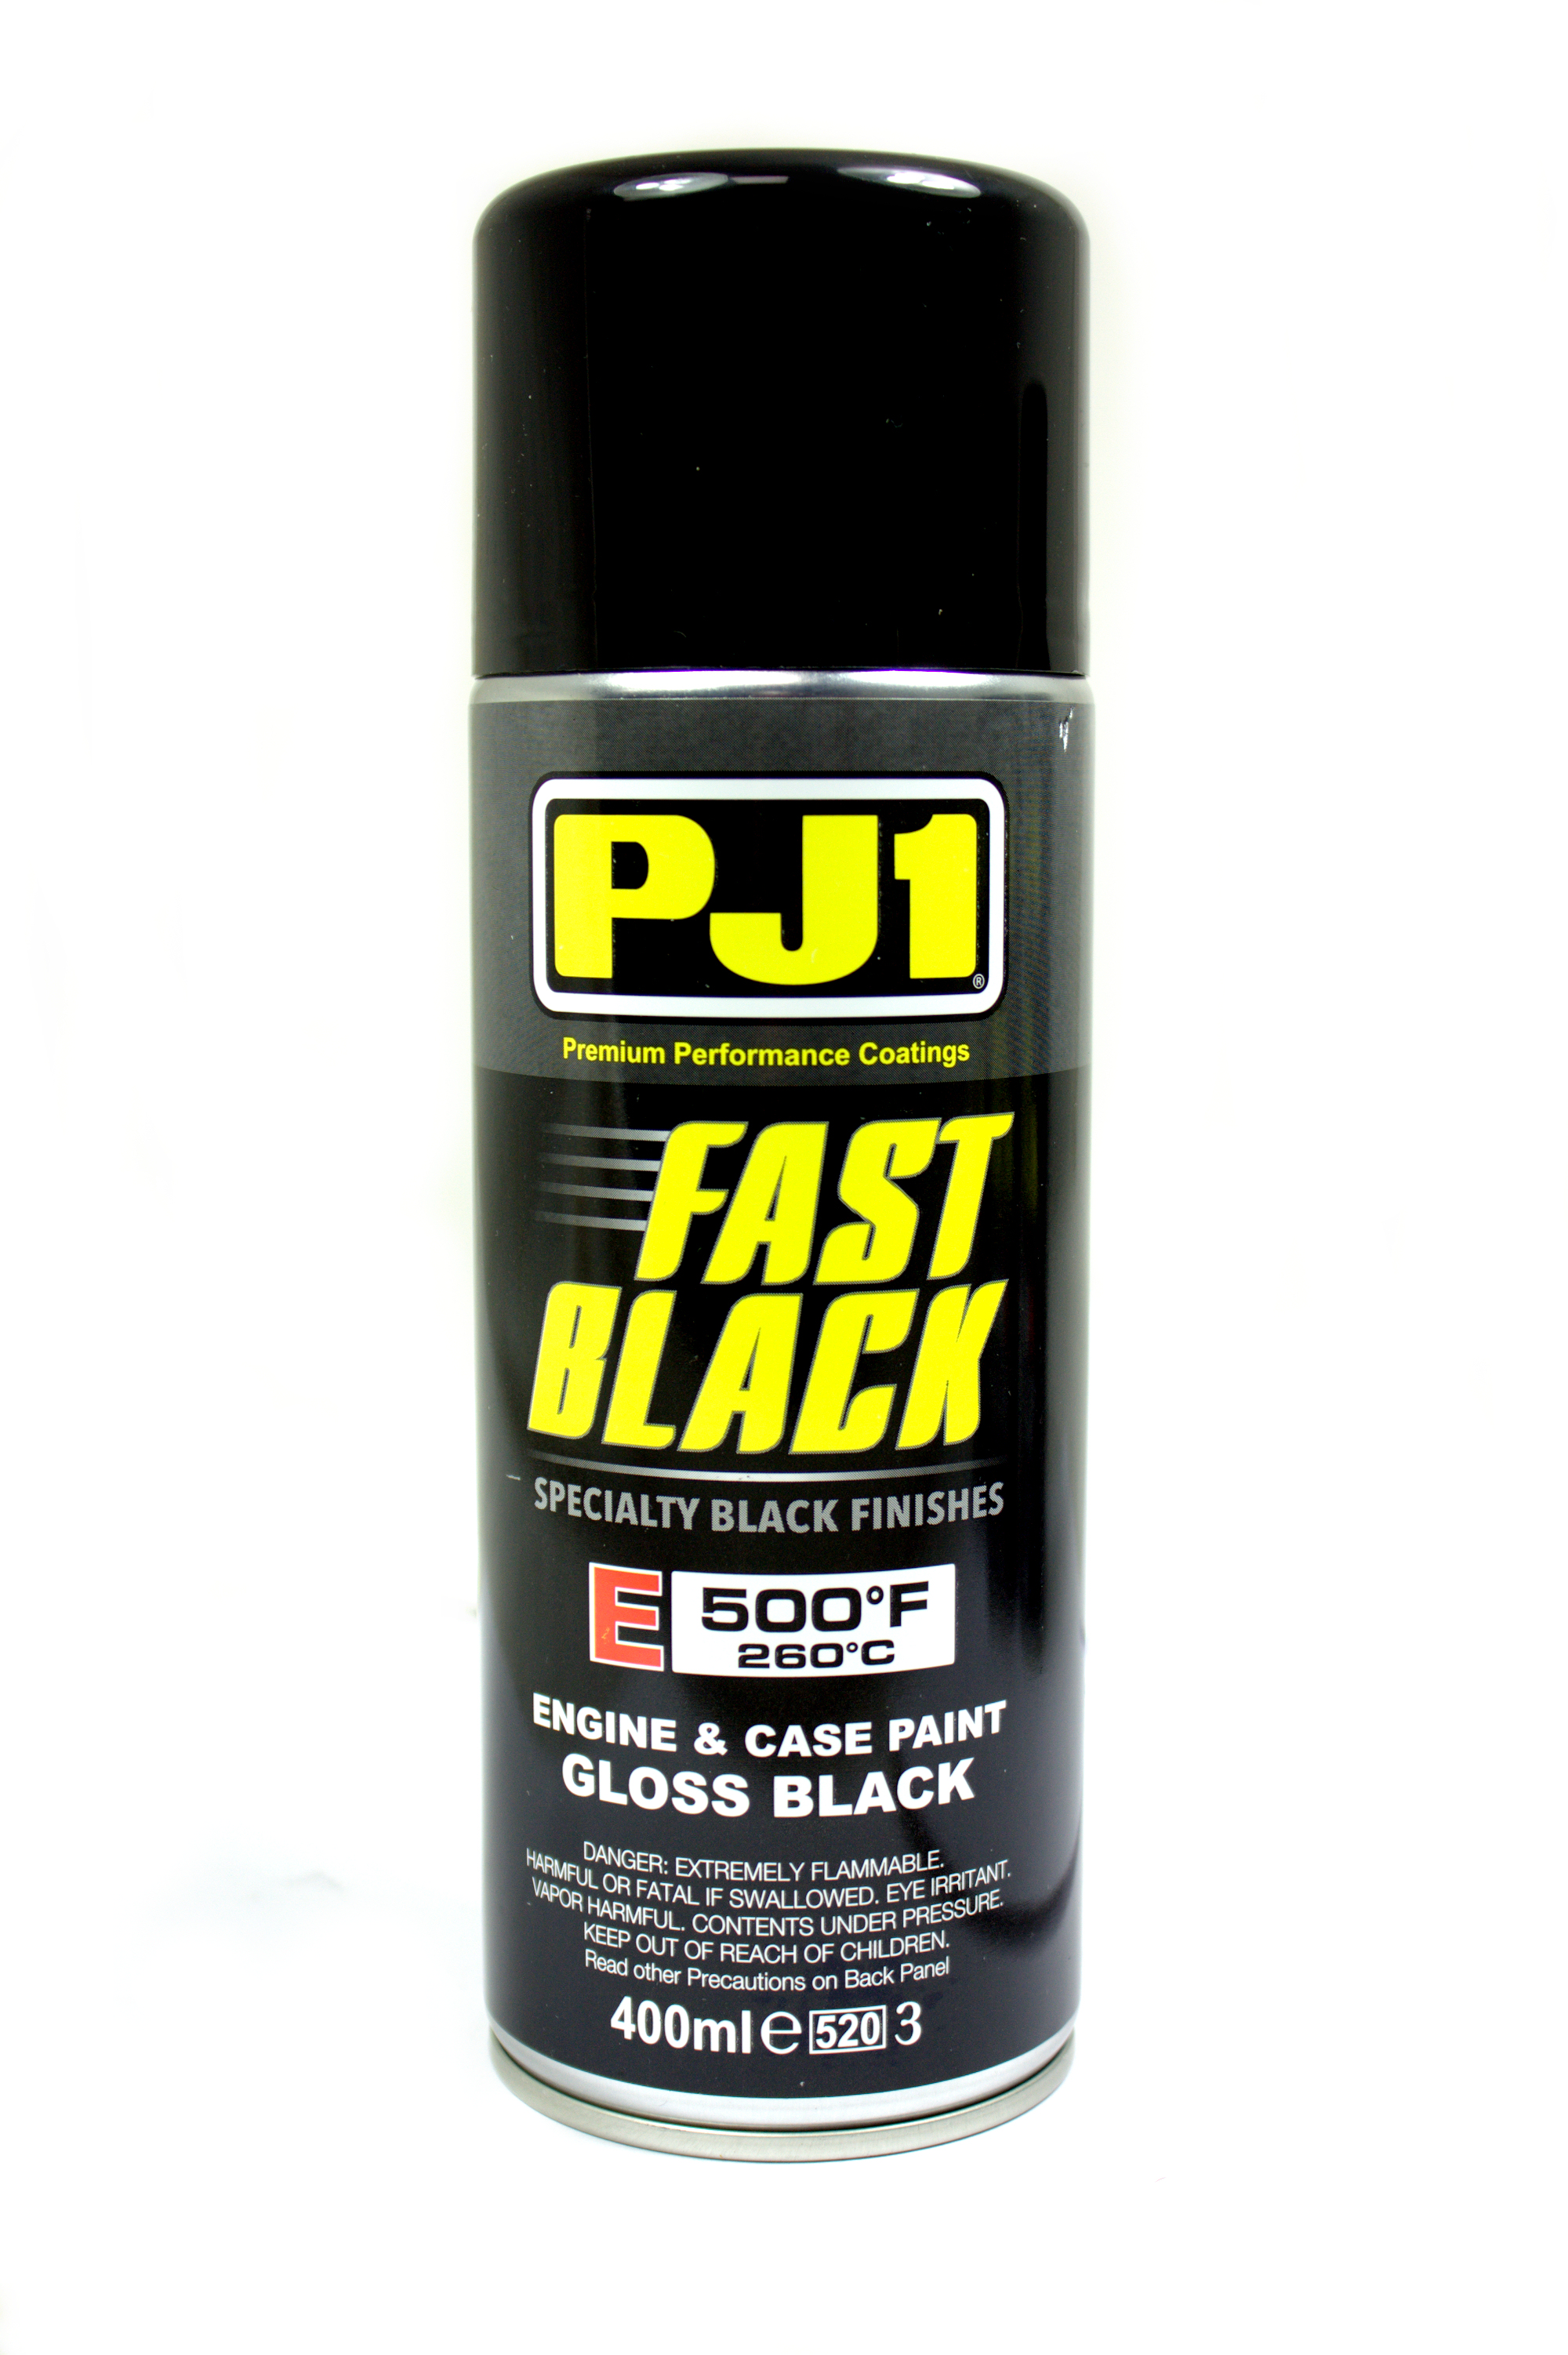 PJ1 Fast Black Gloss Finish 0753402